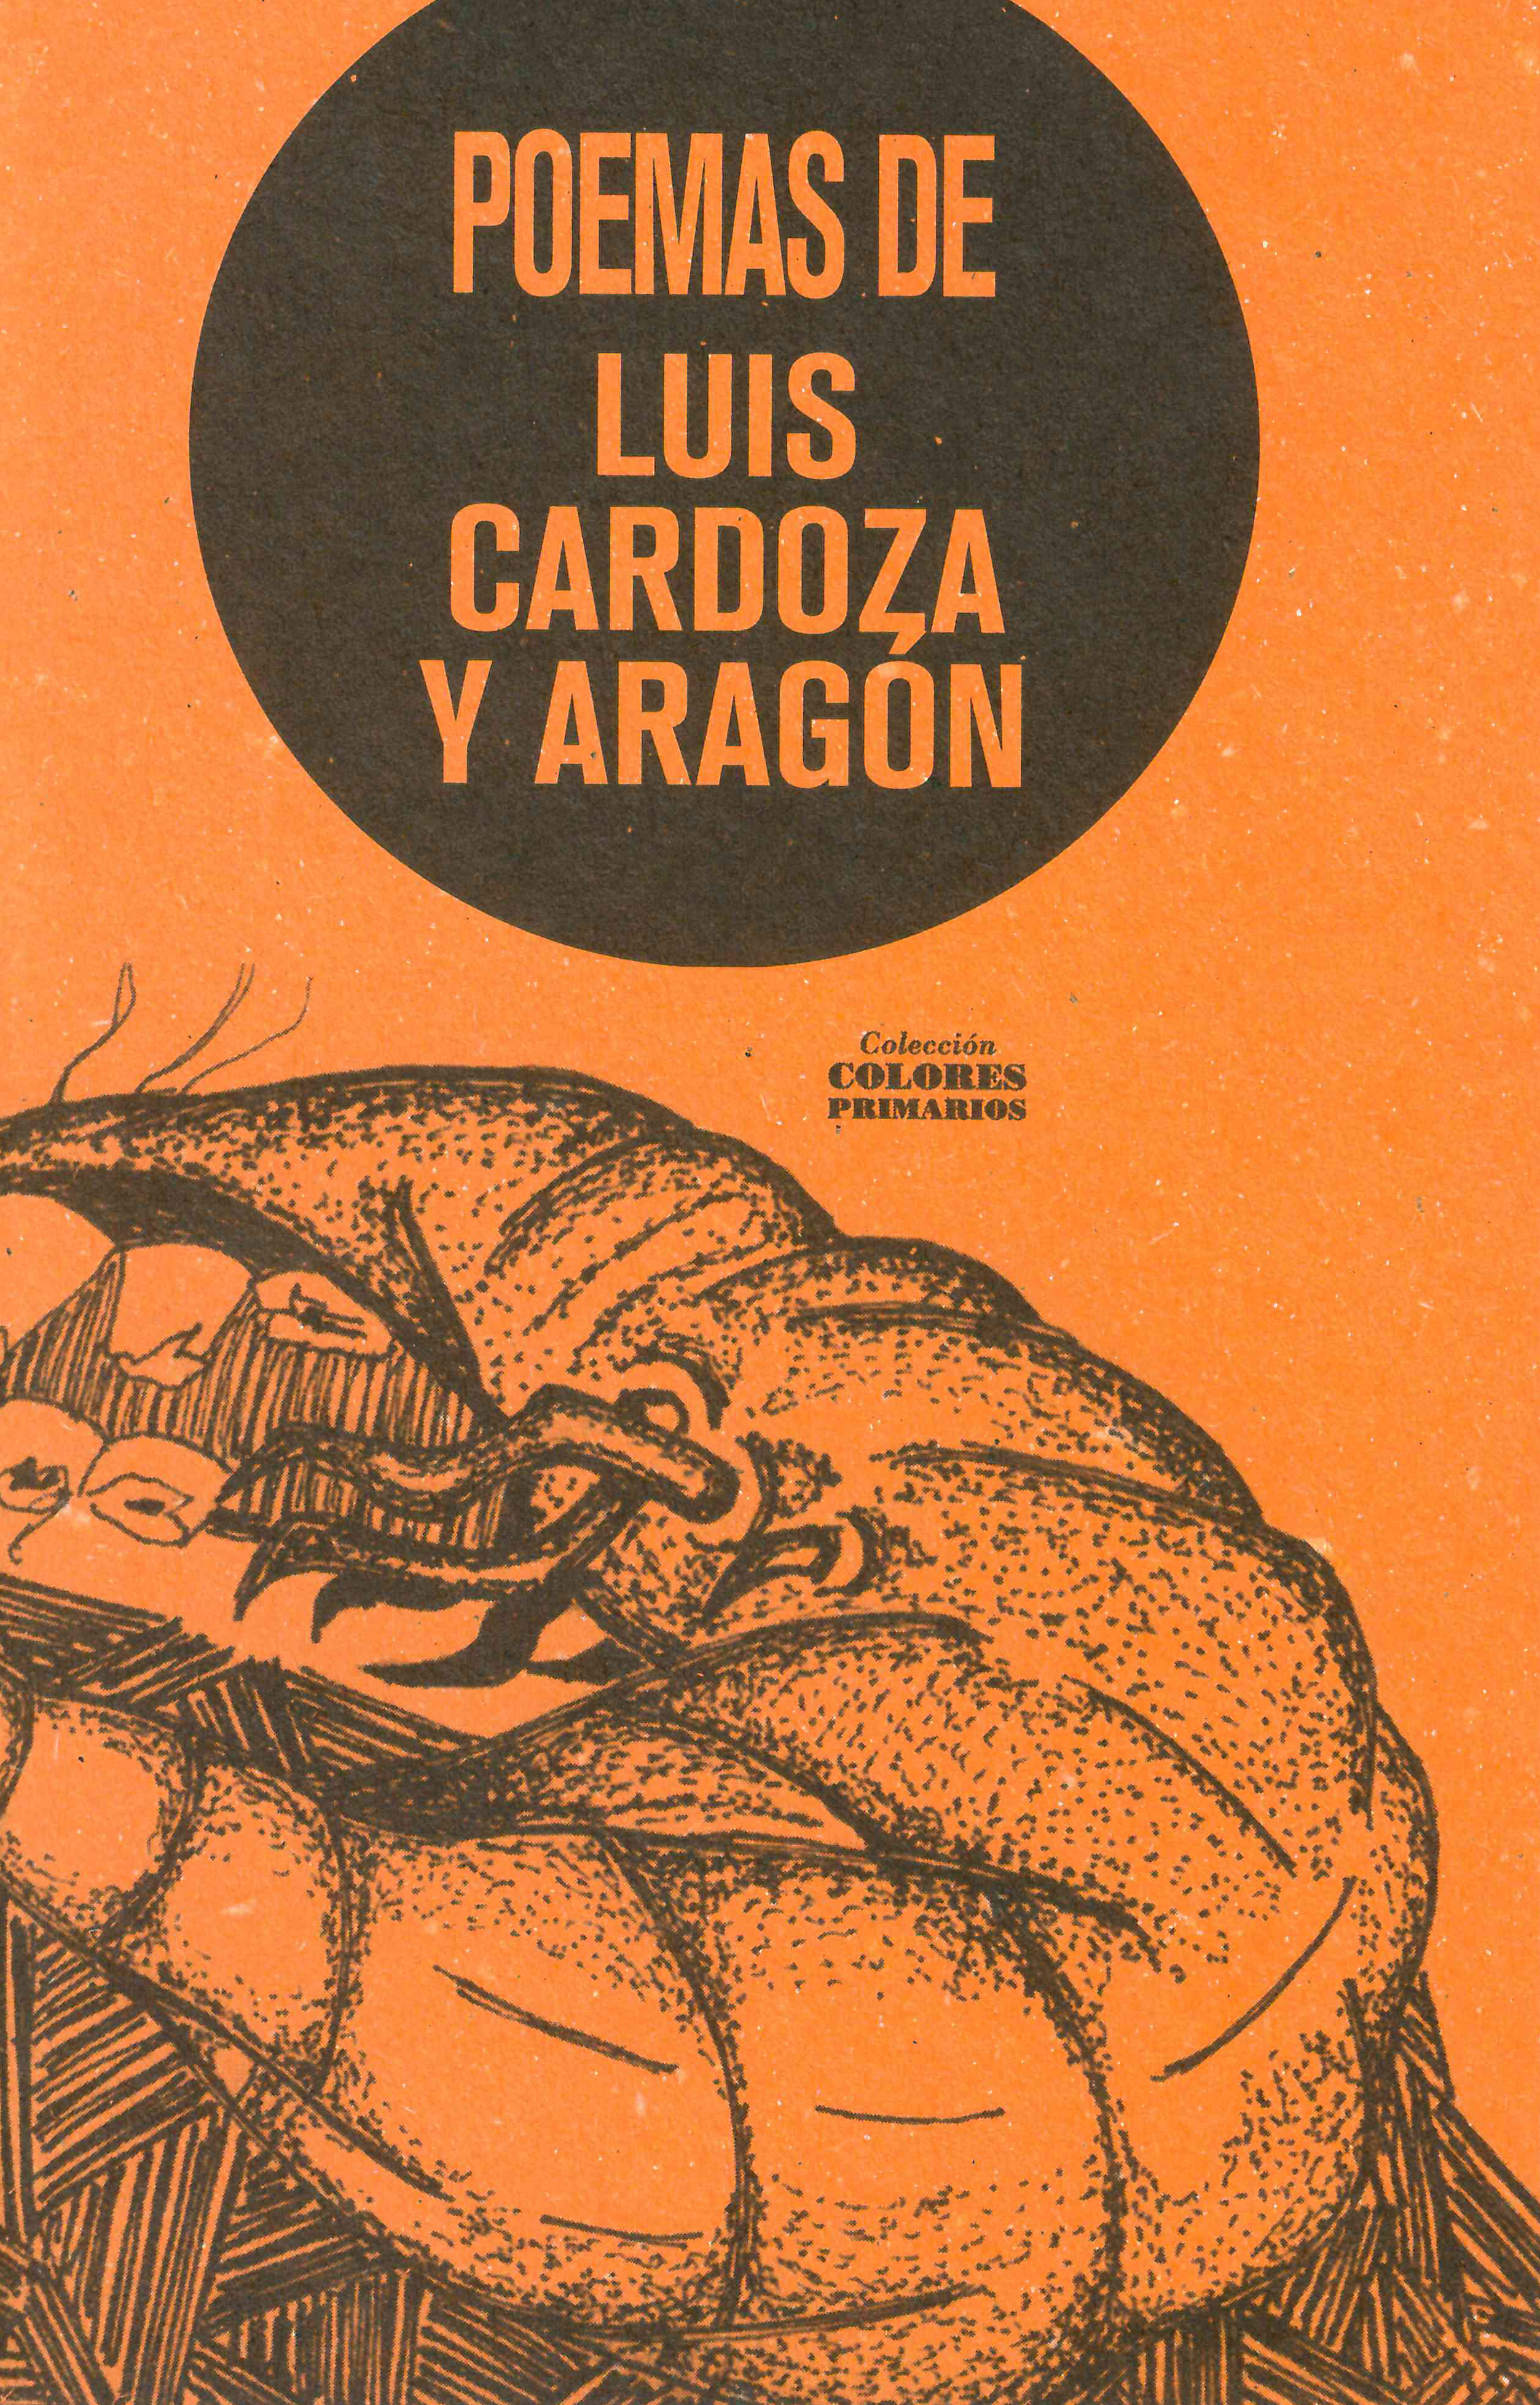 Luis Cardoza y Aragón